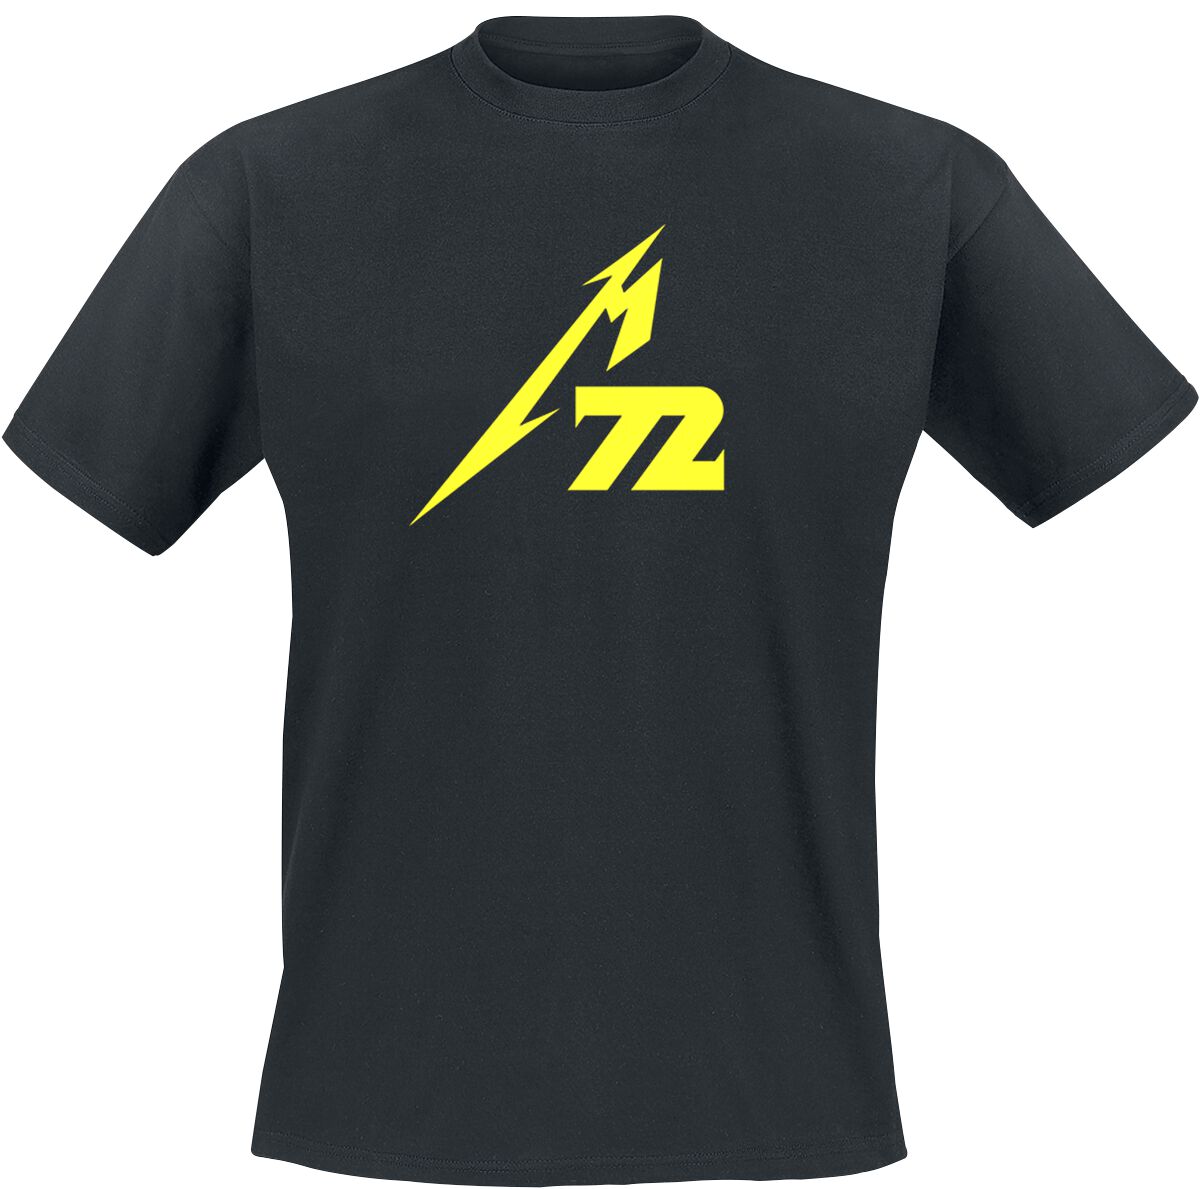 Metallica T-Shirt - Strobes (M72) - M bis 5XL - für Männer - Größe XXL - schwarz  - Lizenziertes Merchandise!